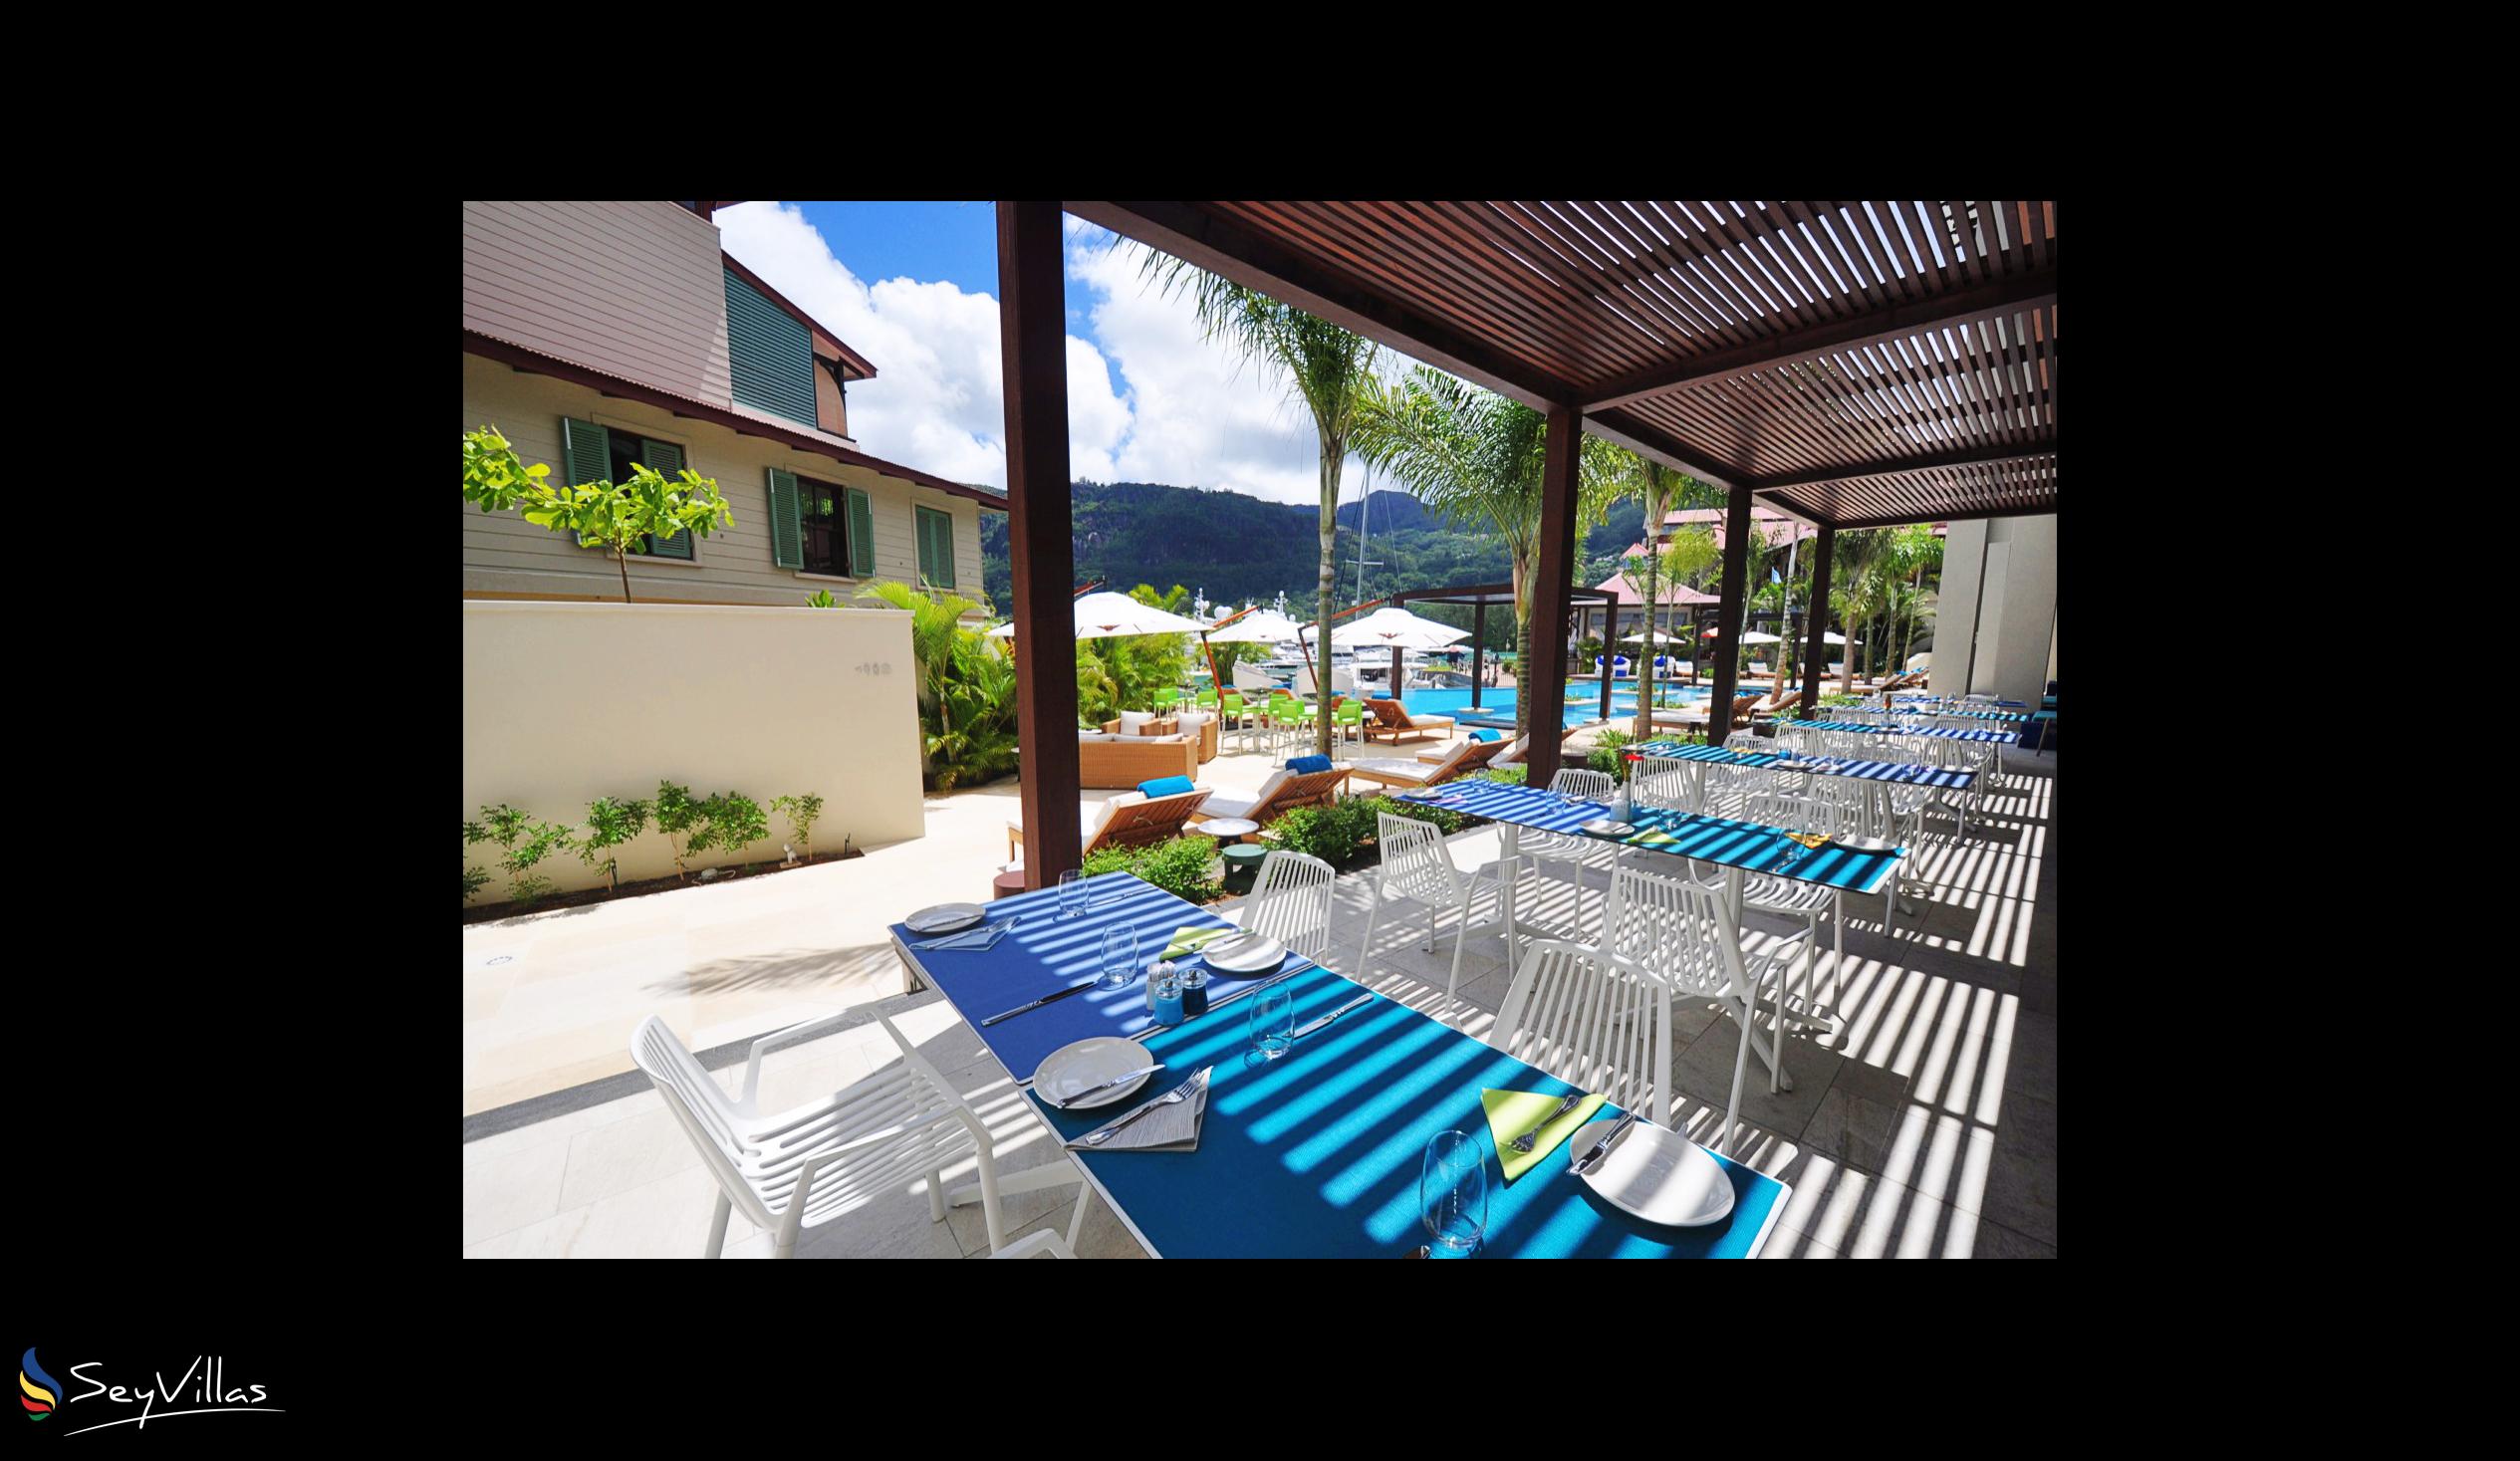 Photo 16: Eden Bleu Hotel - Outdoor area - Mahé (Seychelles)